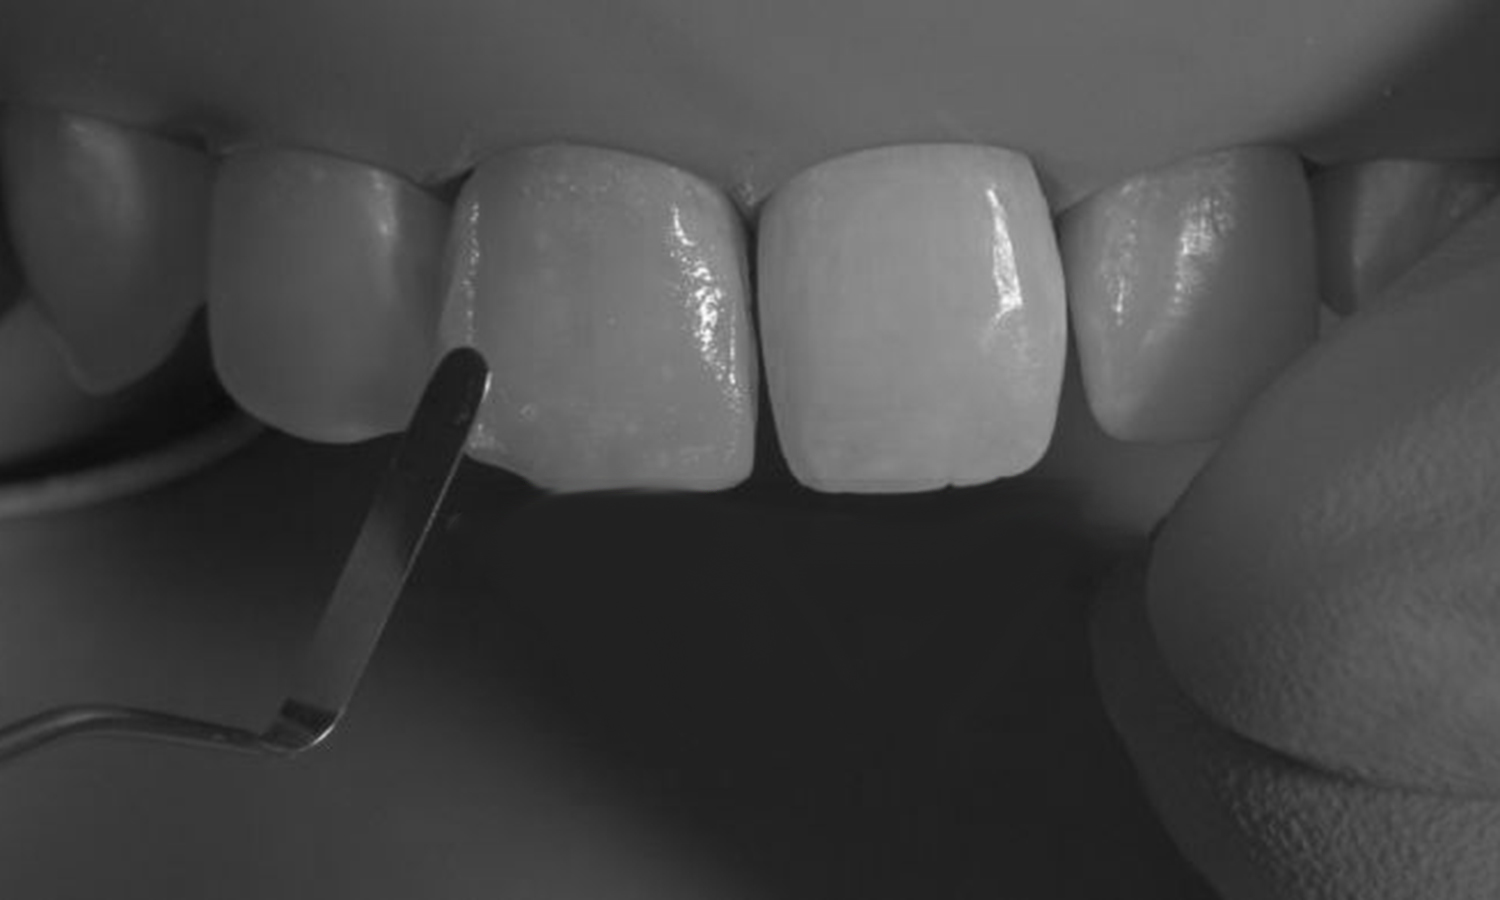 lente de contato dental em resina dente anterior da frente